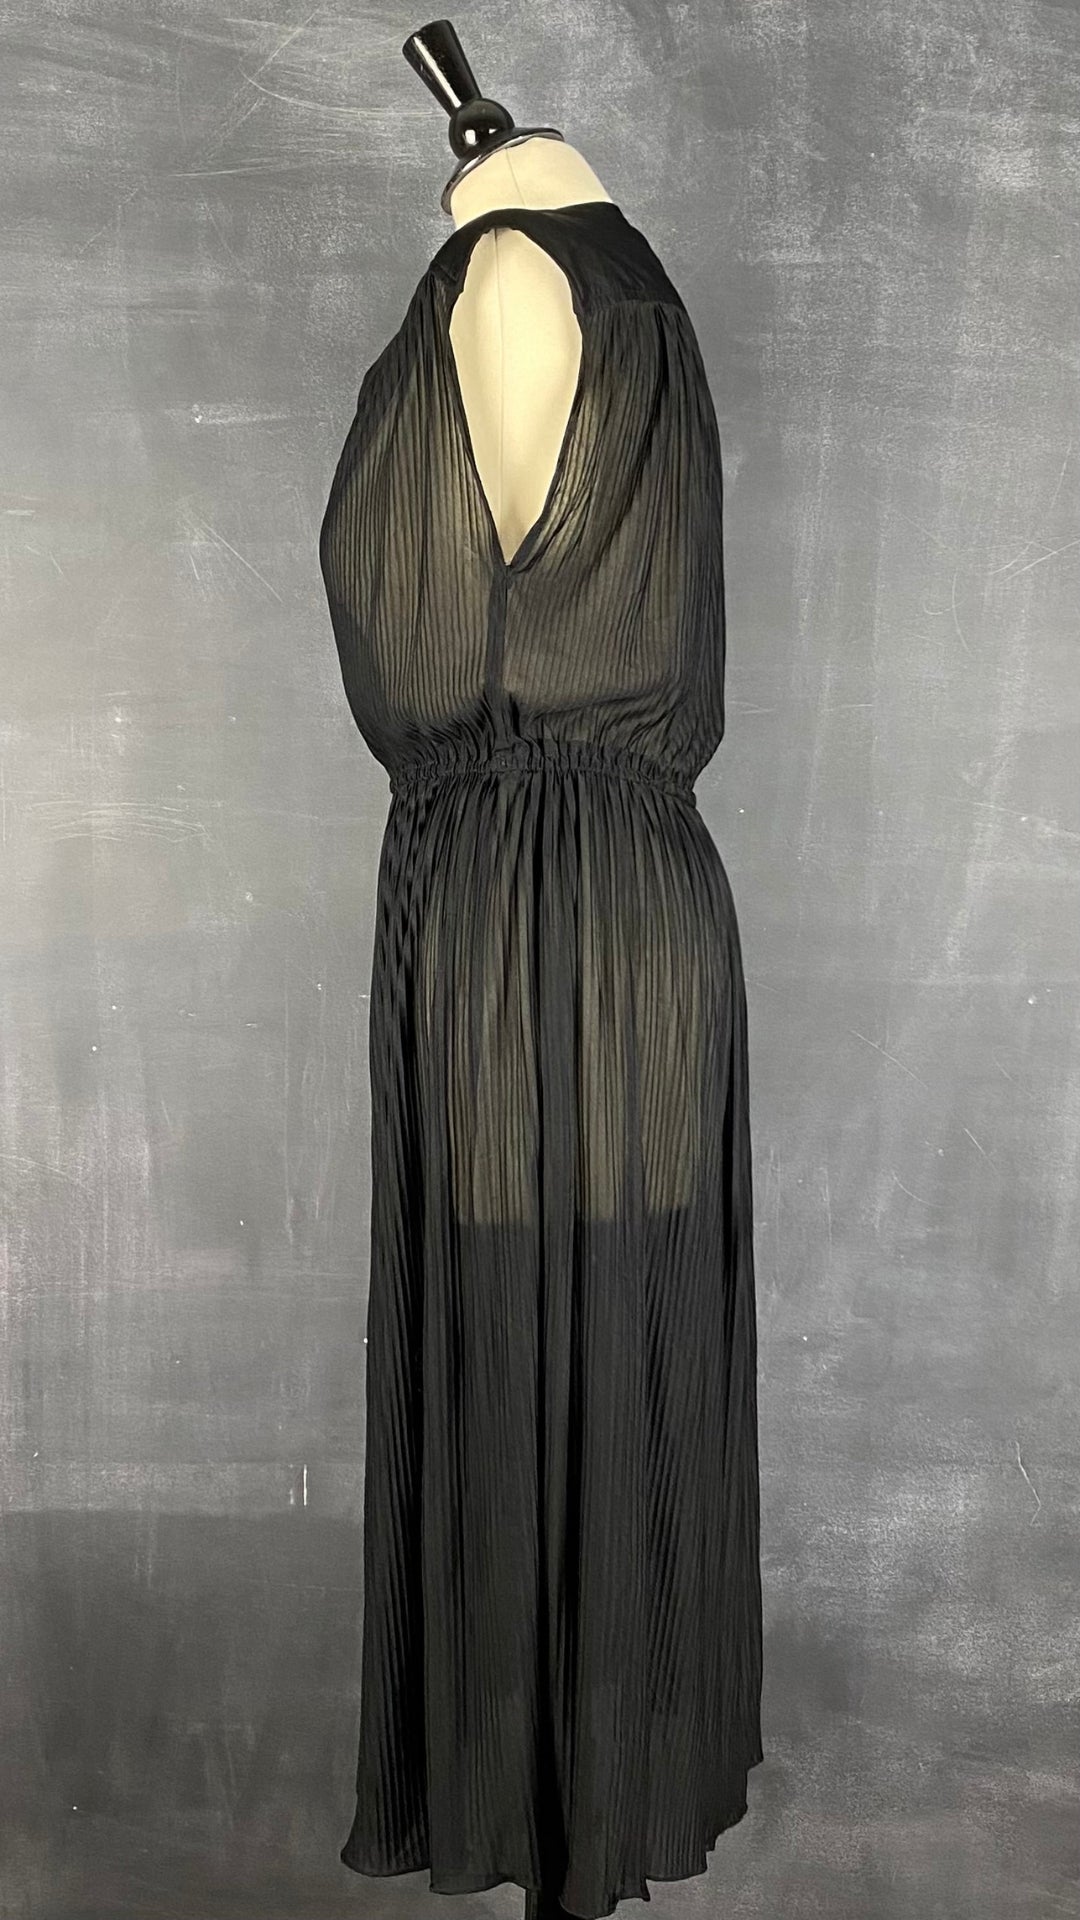 Robe plissée noire vintage, taille xs/s. Vue de côté.